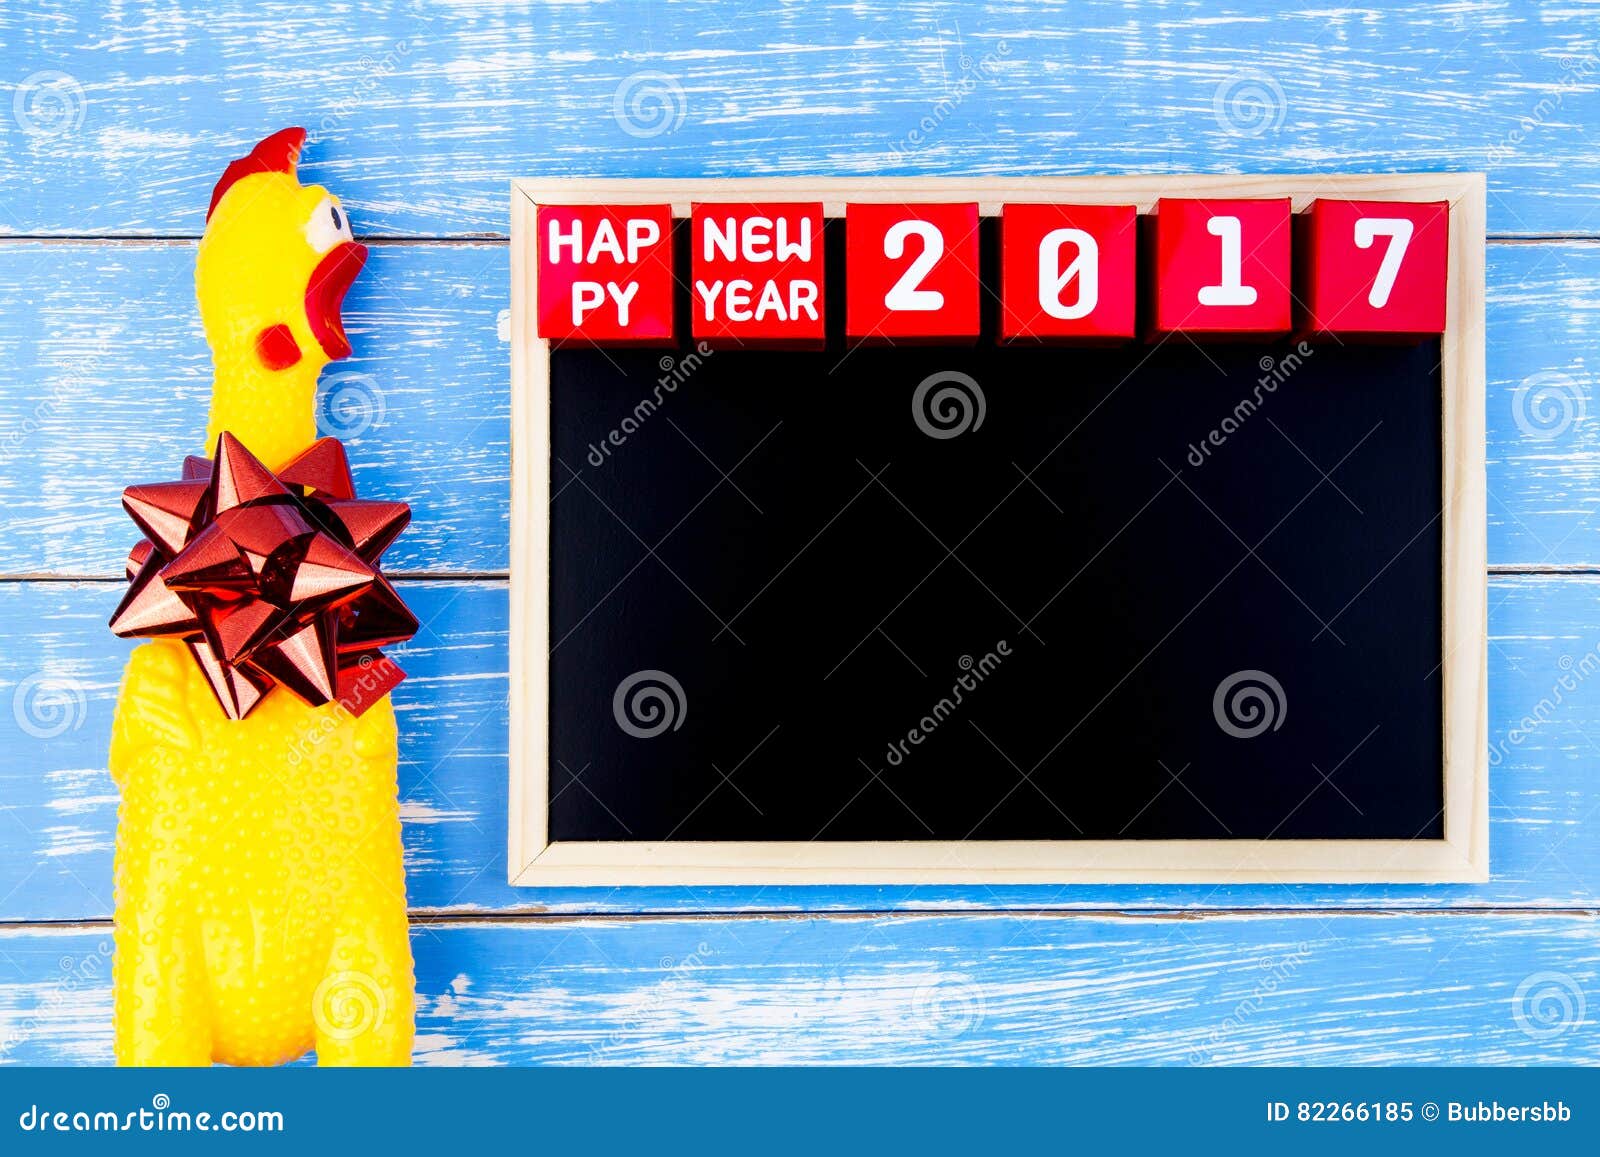 Κίτρινος κοτόπουλο παιχνιδιών, πίνακας και αριθμός καλής χρονιάς 2017 επάνω. Κίτρινος κοτόπουλο παιχνιδιών, πίνακας και αριθμός καλής χρονιάς 2017 στους κόκκινους κύβους κιβωτίων εγγράφου στο μπλε ξύλινο υπόβαθρο με το διάστημα αντιγράφων Έτος του κόκκορα 2017 νέο υπόβαθρο έννοιας έτους